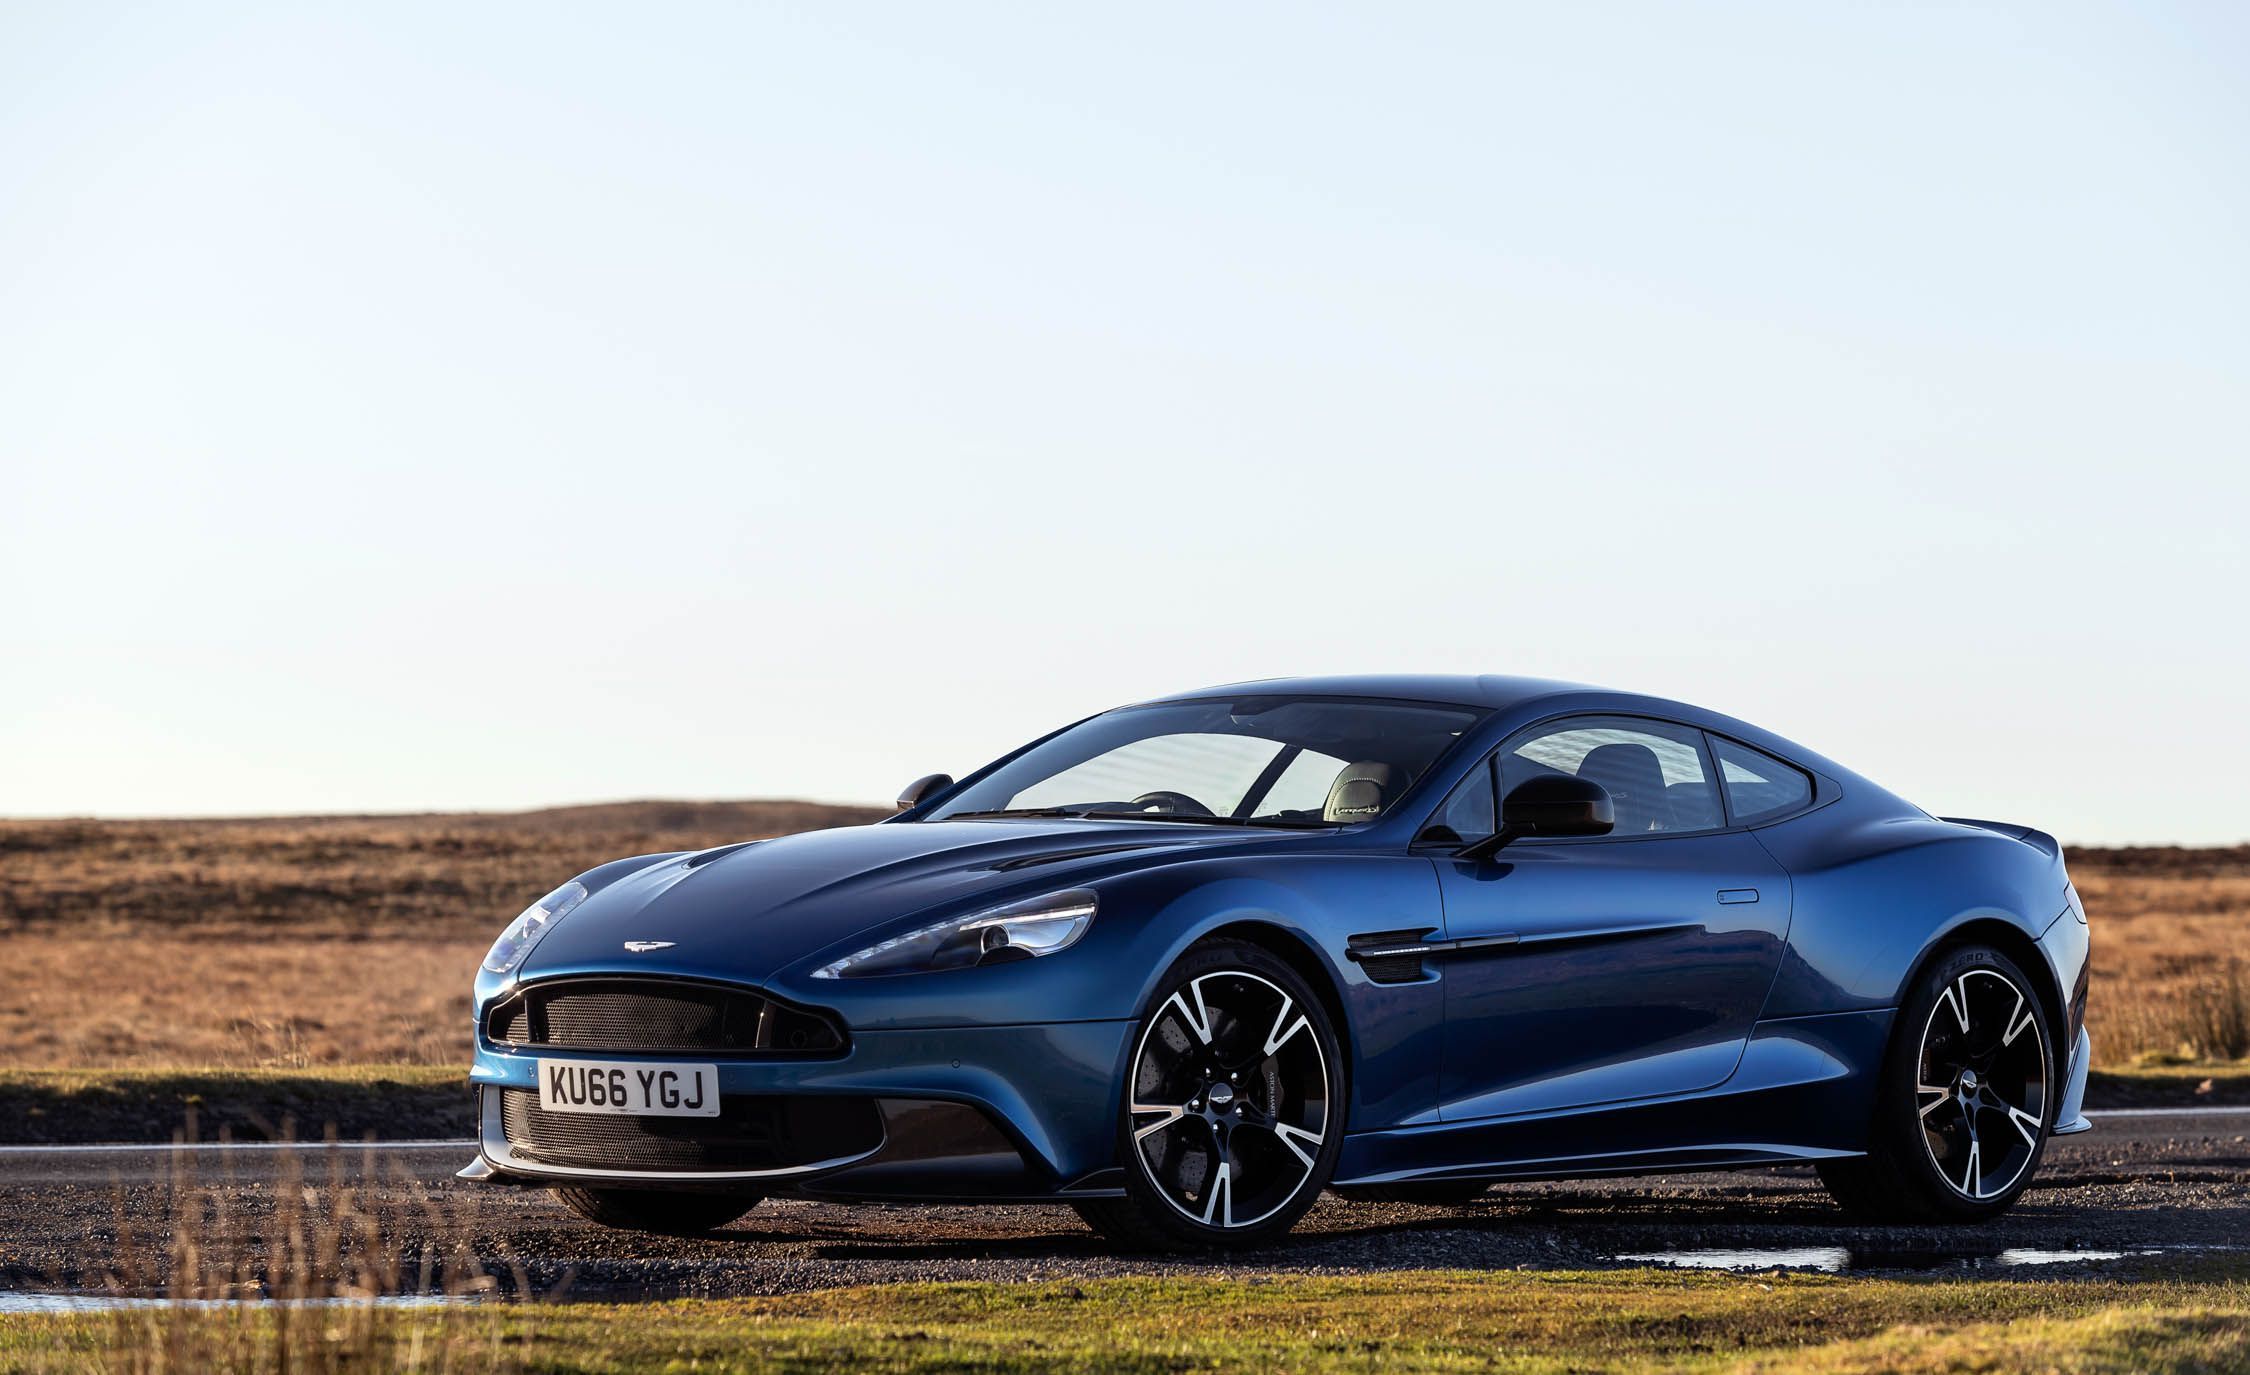 Aston Martin Vanquish repair prices